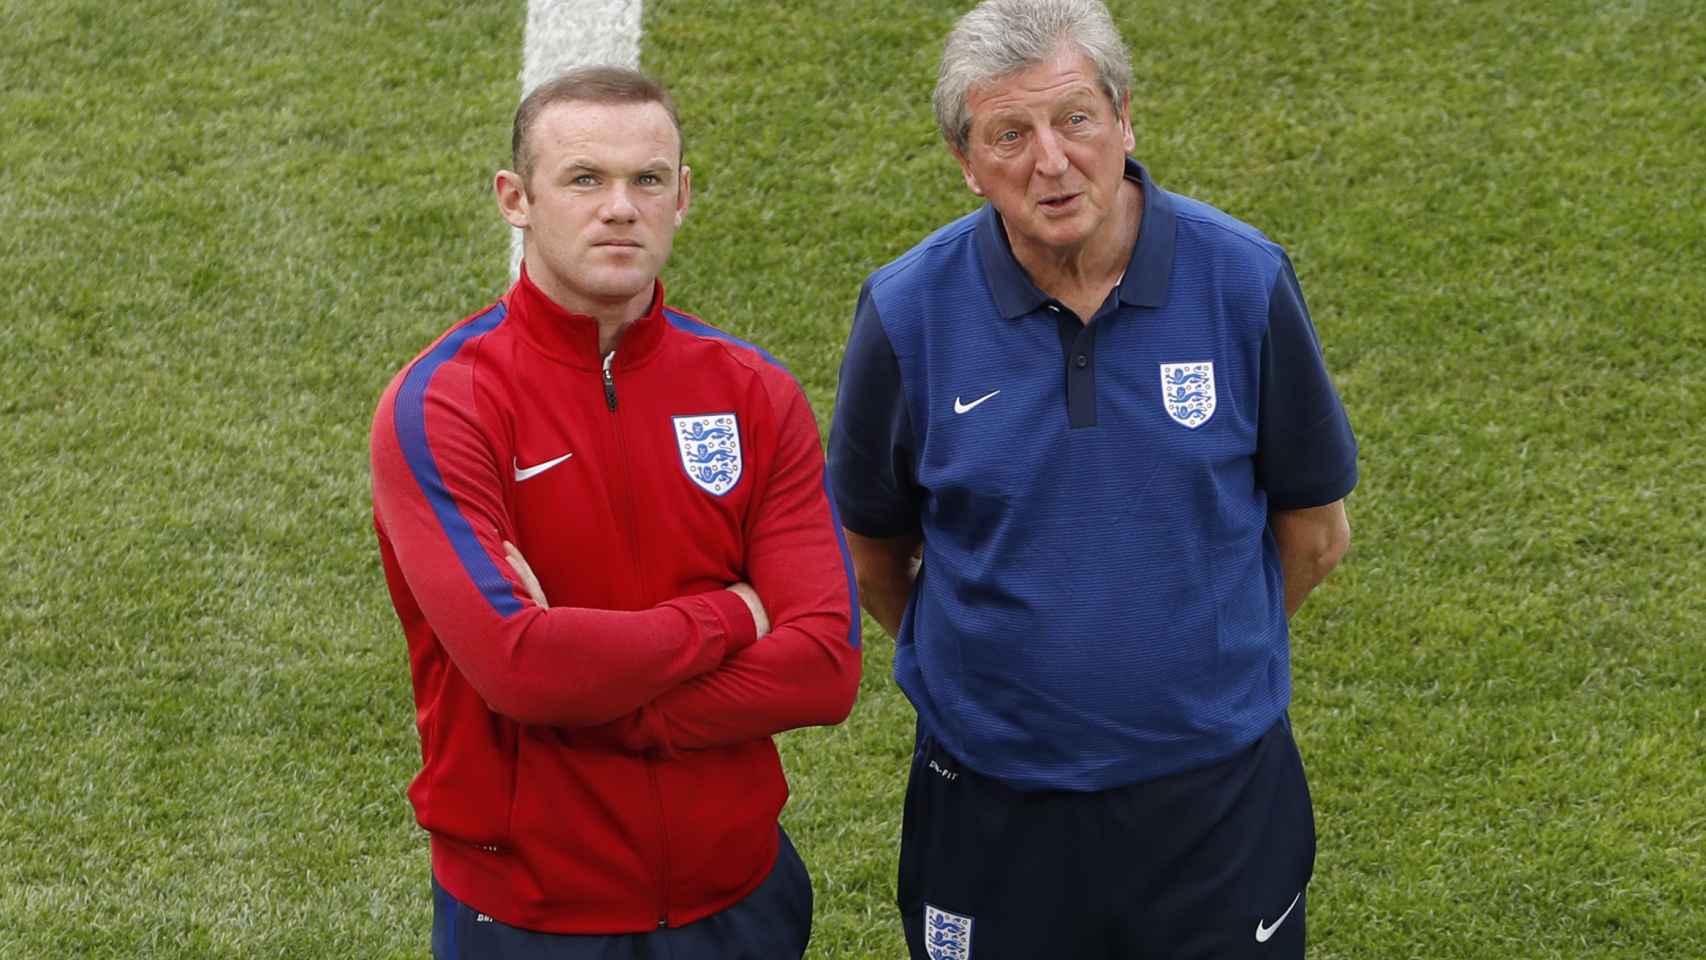 Wayne Rooney y el seleccionador Roy Hodgson durante un entrenamiento.